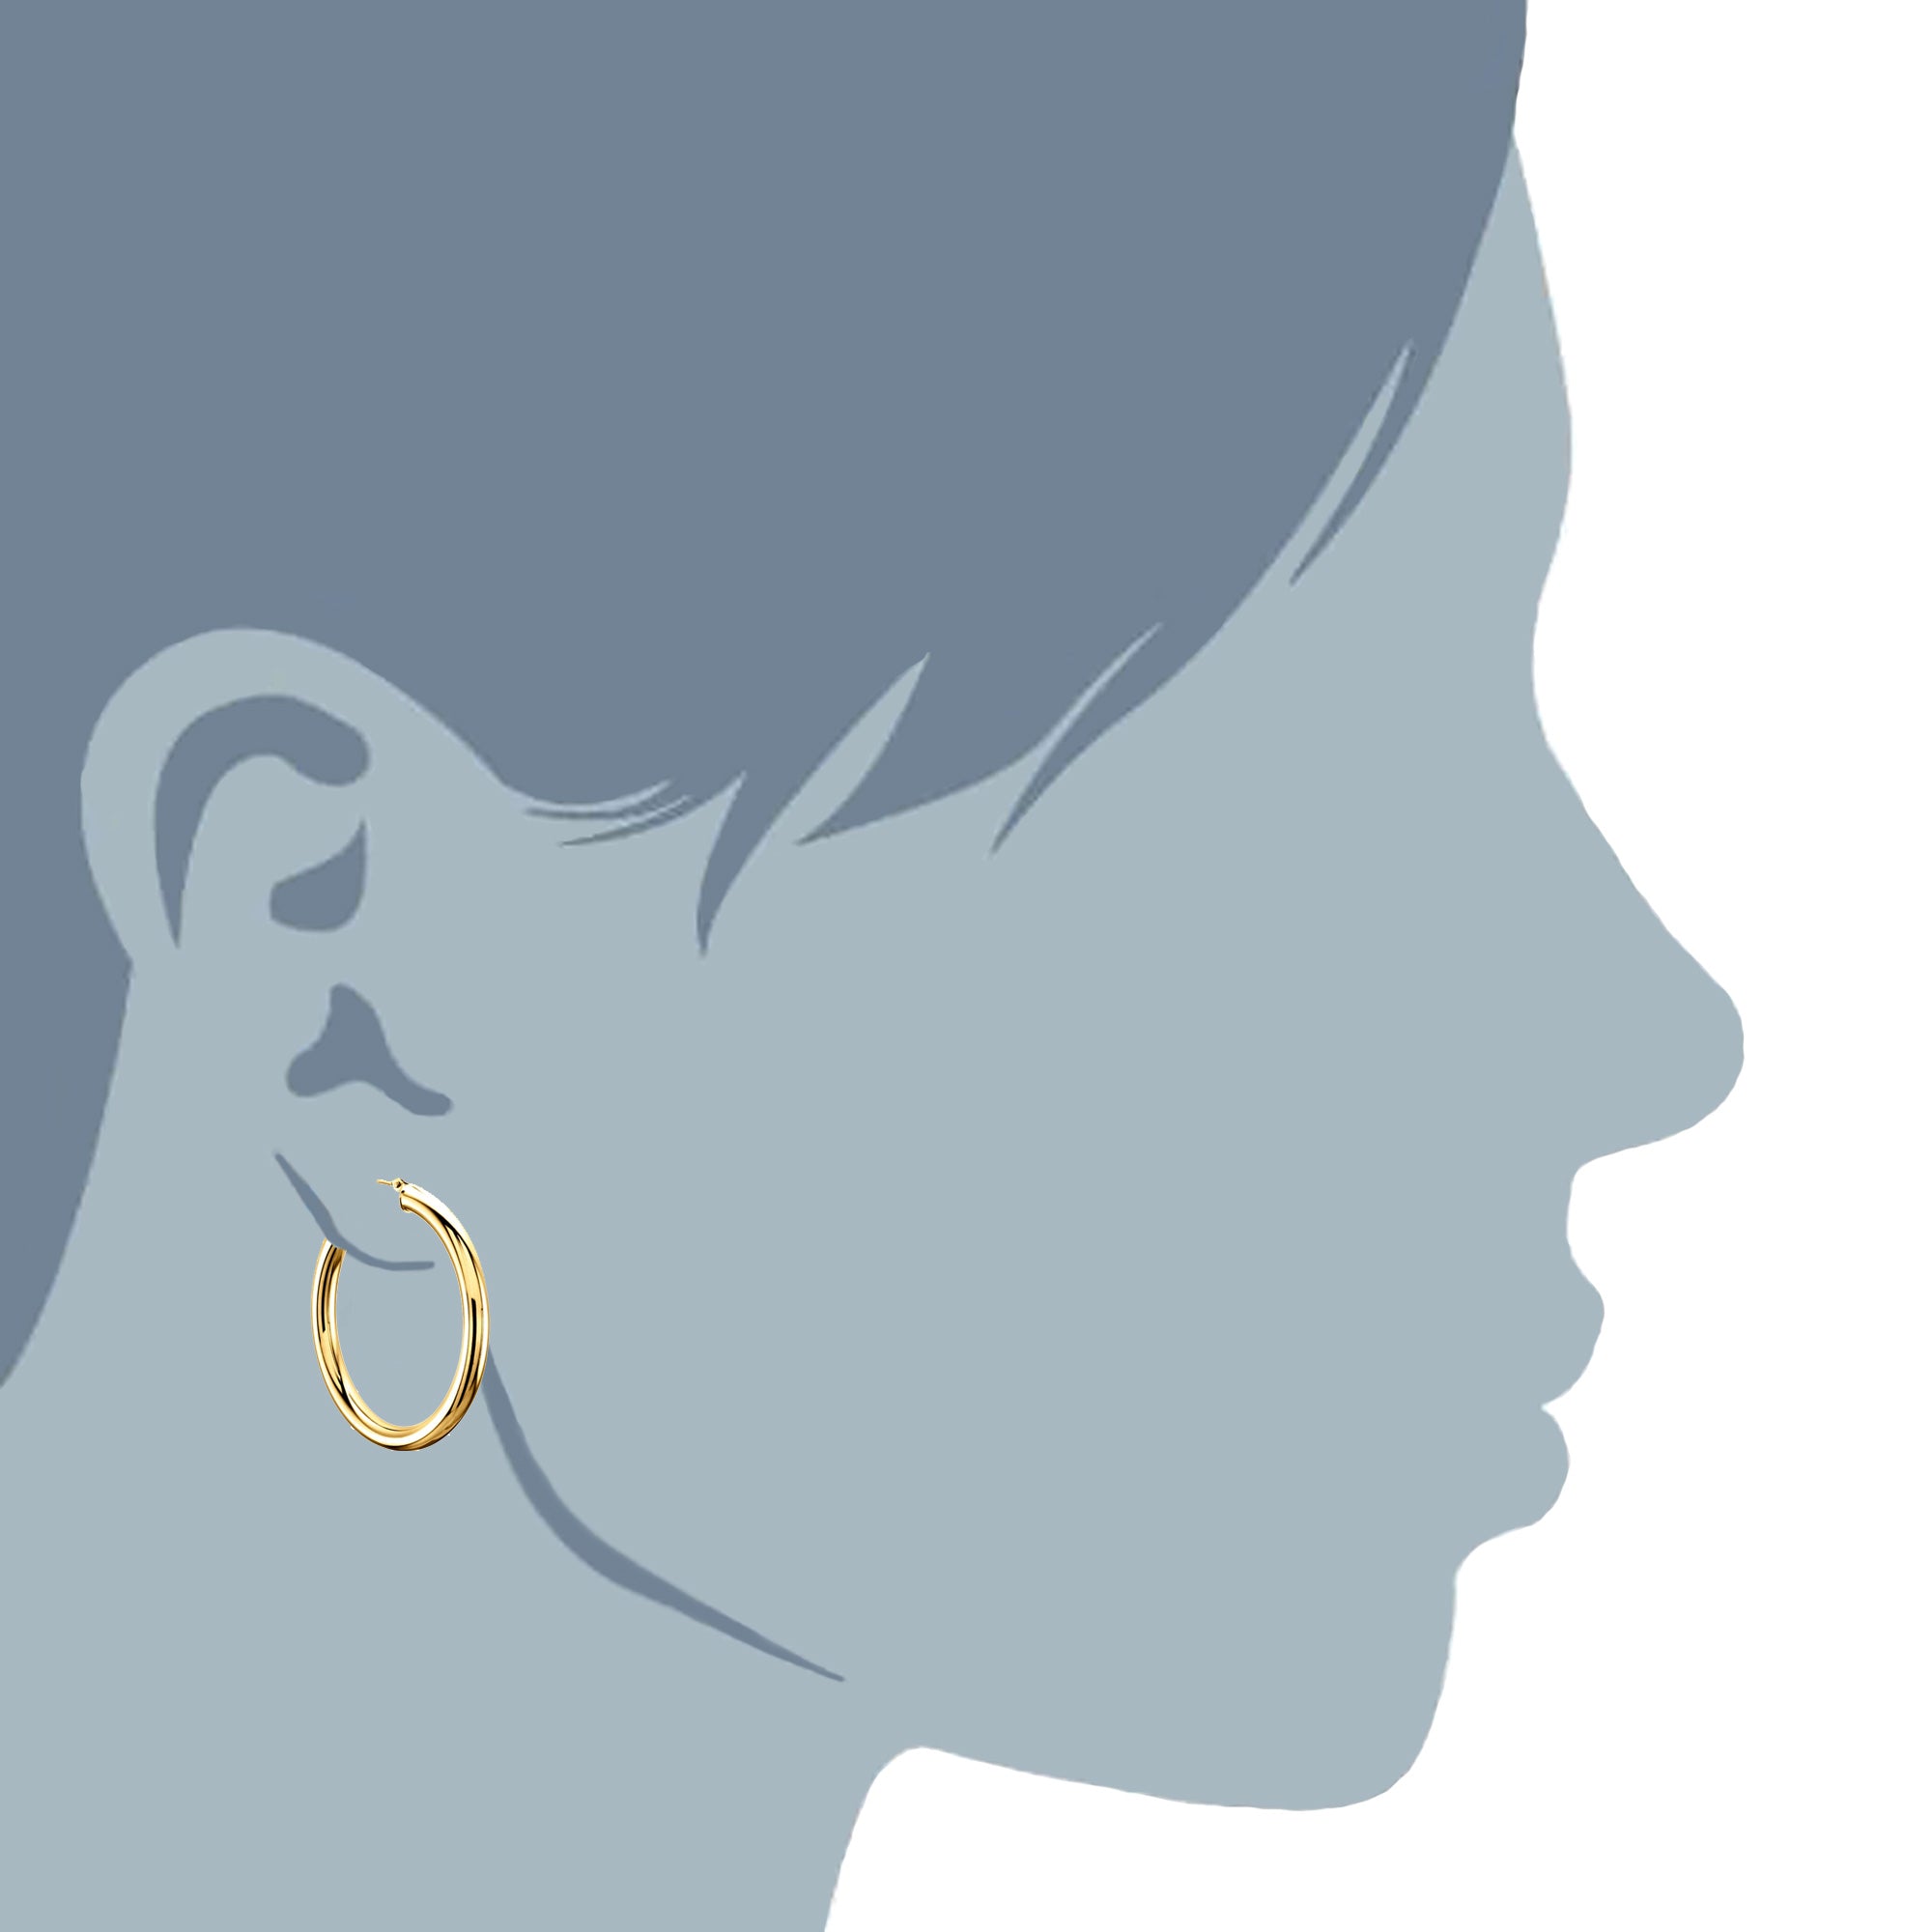 14K gult guld 3MM glänsande runda rörbågeörhängen fina designersmycken för män och kvinnor